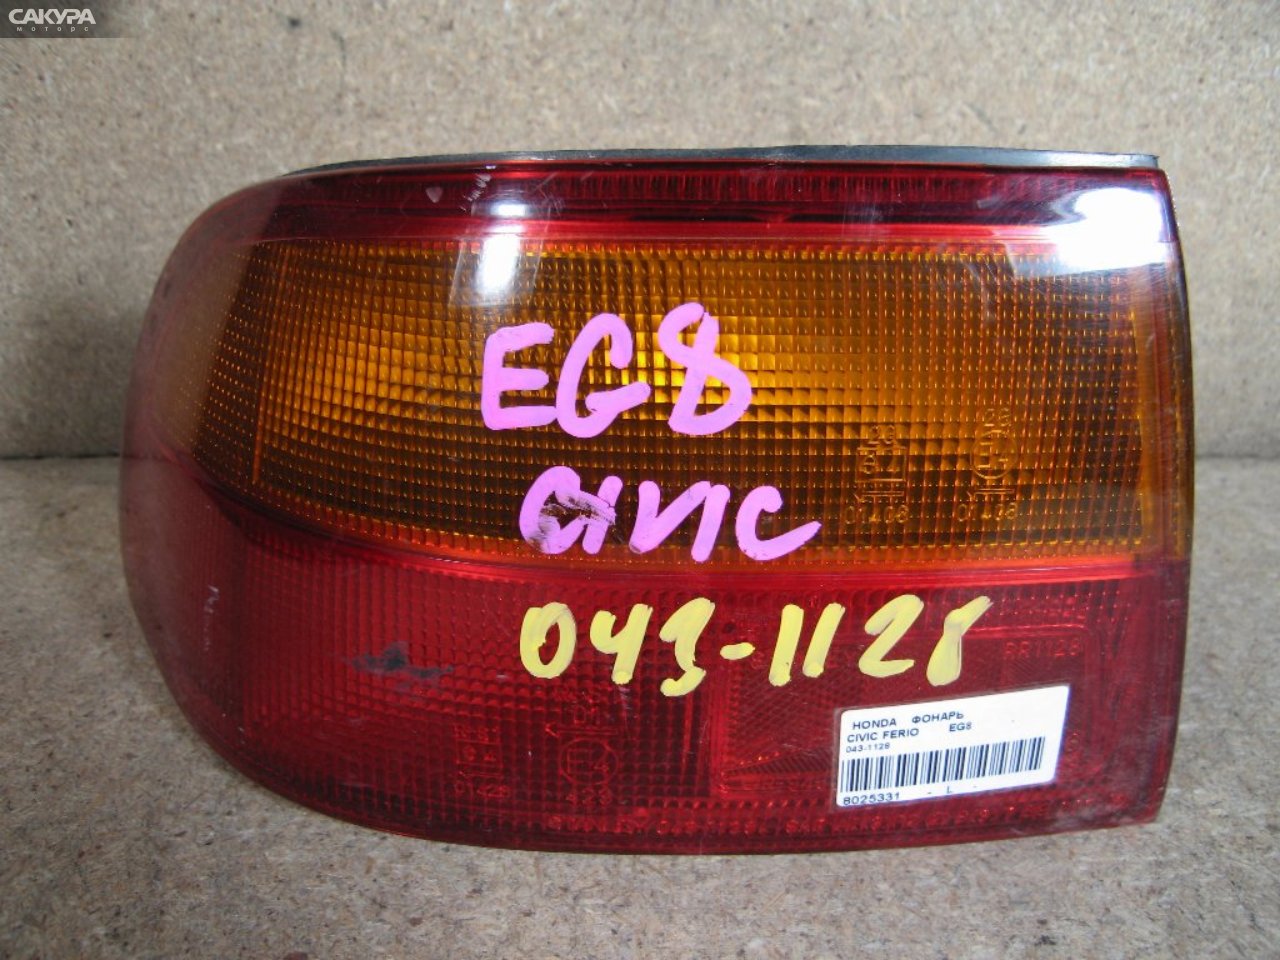 Фонарь стоп-сигнала левый Honda Civic Ferio EG8 043-1128: купить в Сакура Абакан.